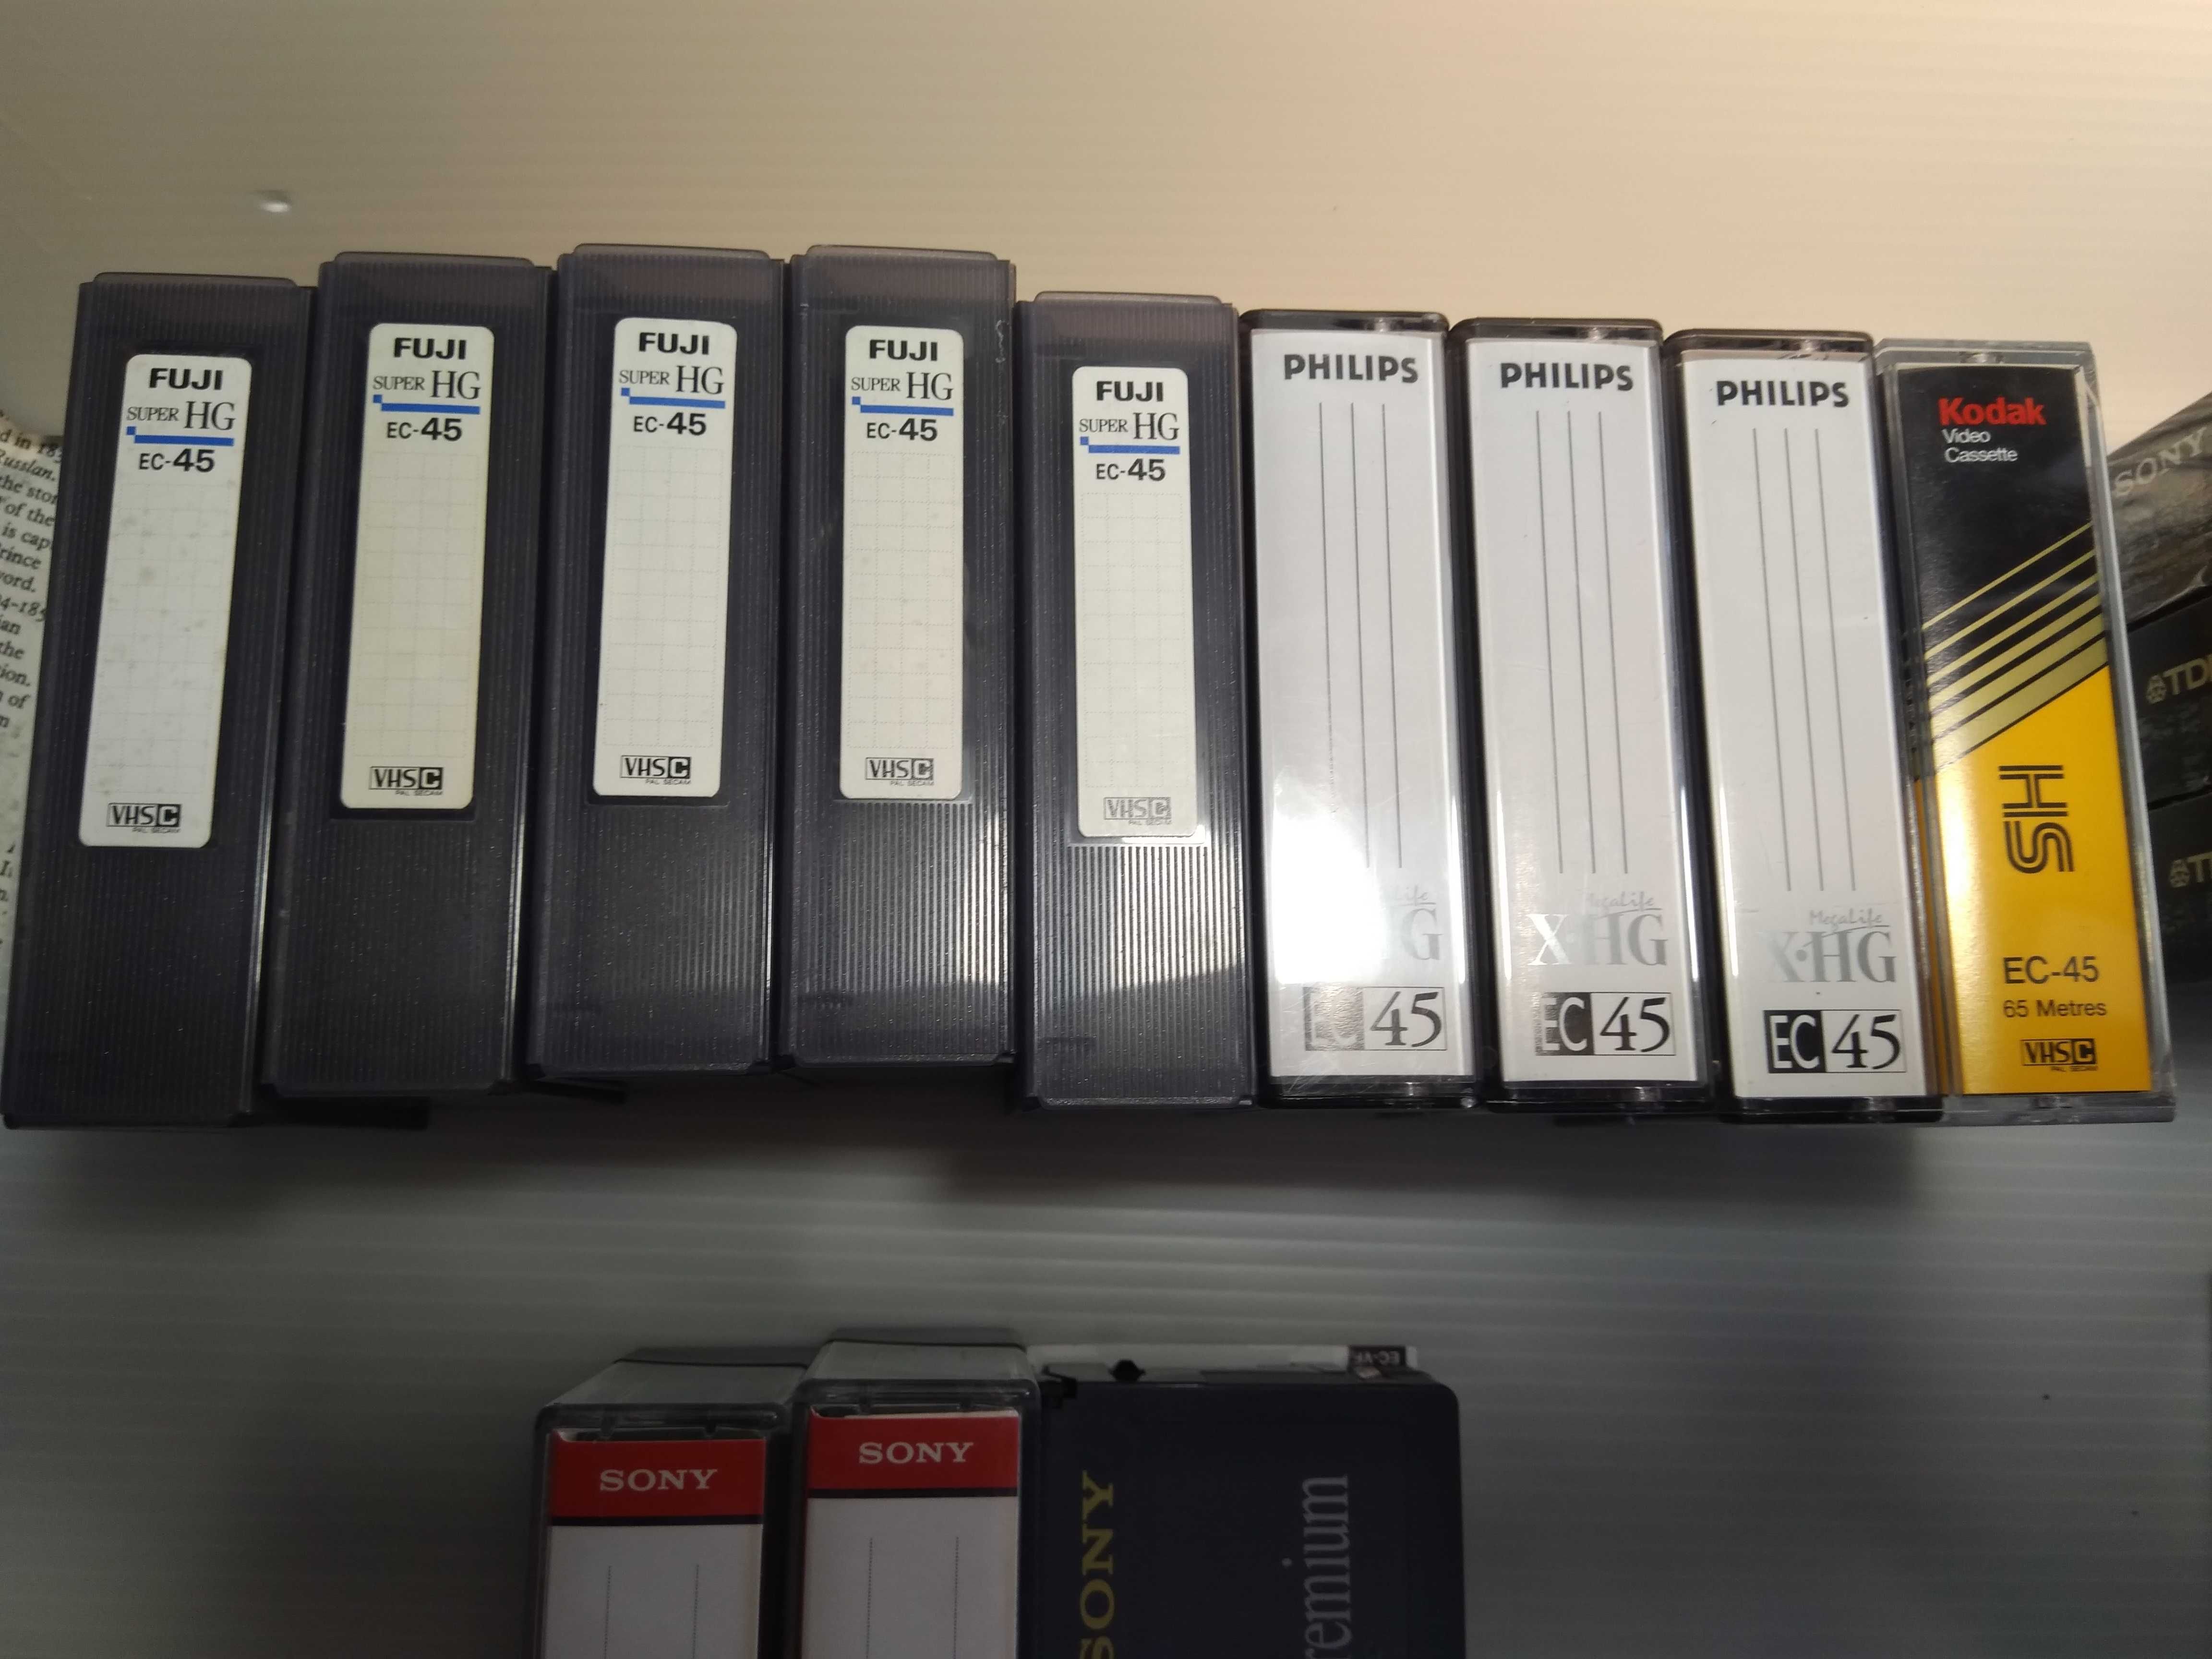 Lote de Cassetes video 8mm como novas